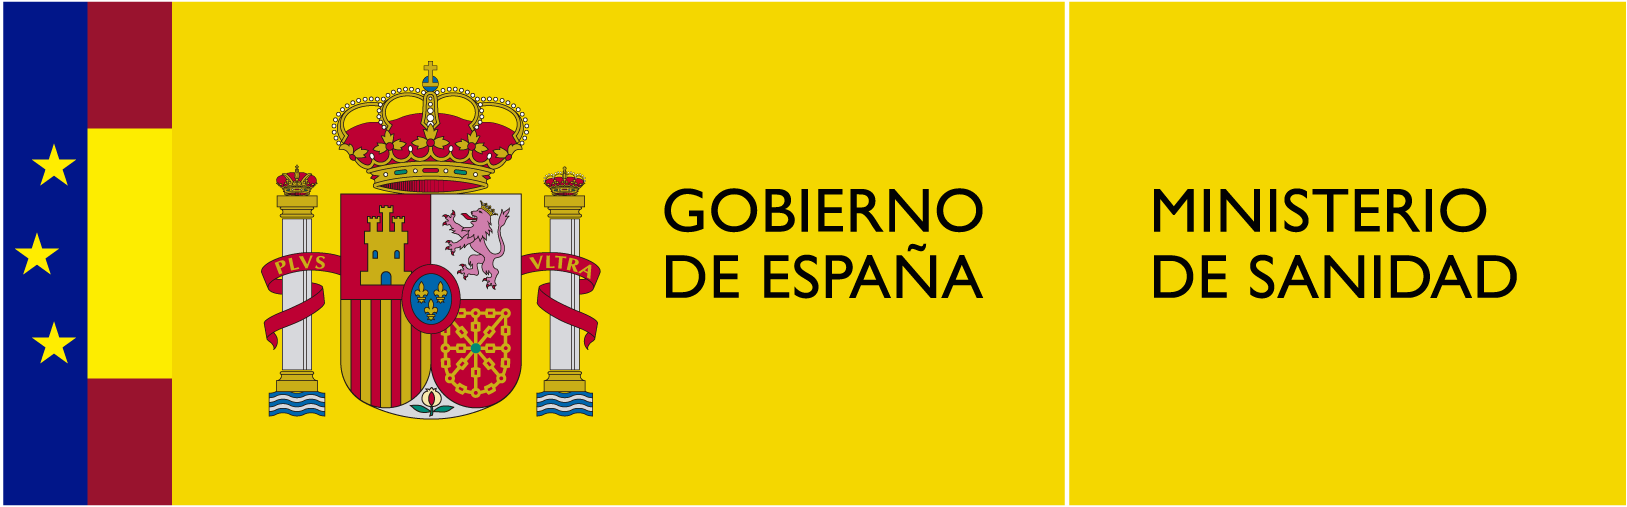 Logotipo_del_Ministerio_de_Sanidad_españa